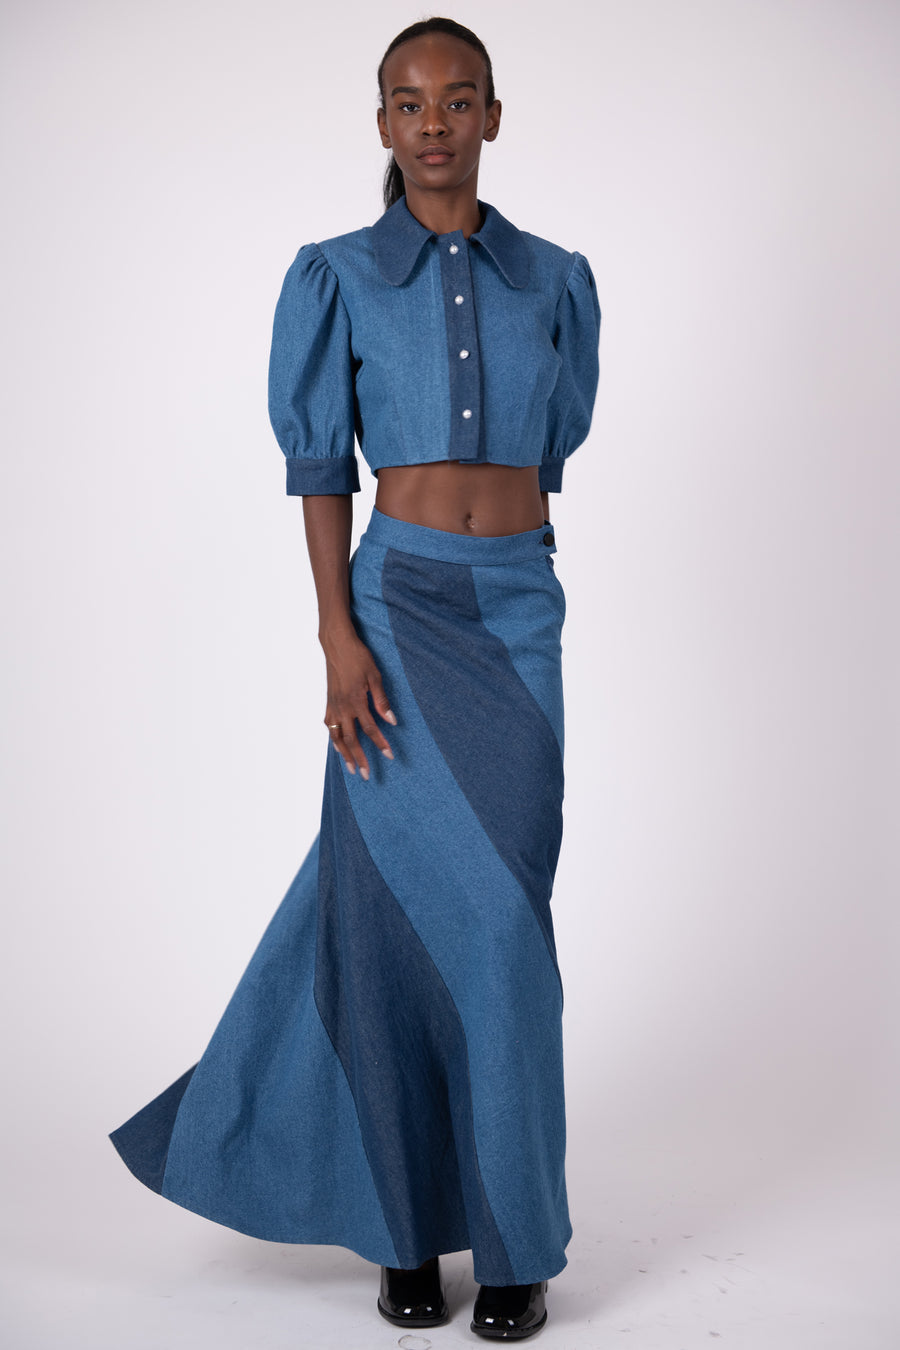 BATSHEVA - Preorder Cera Skirt in Medium Blue Denim